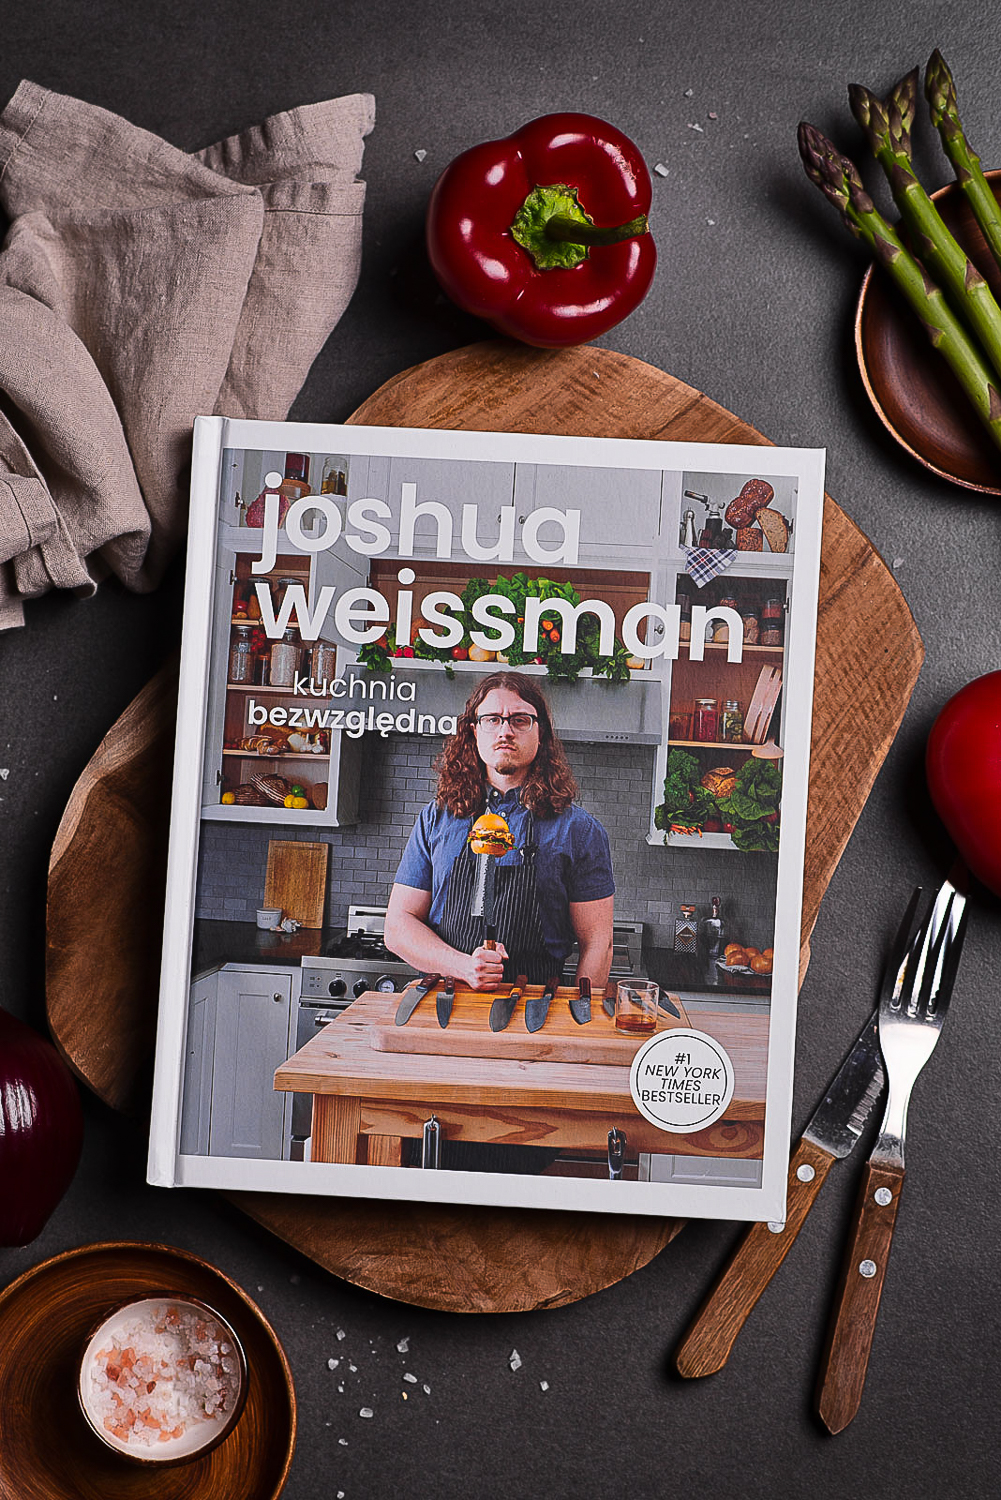 Kuchnia bezwzględna J.Weissman - recenzja książki 